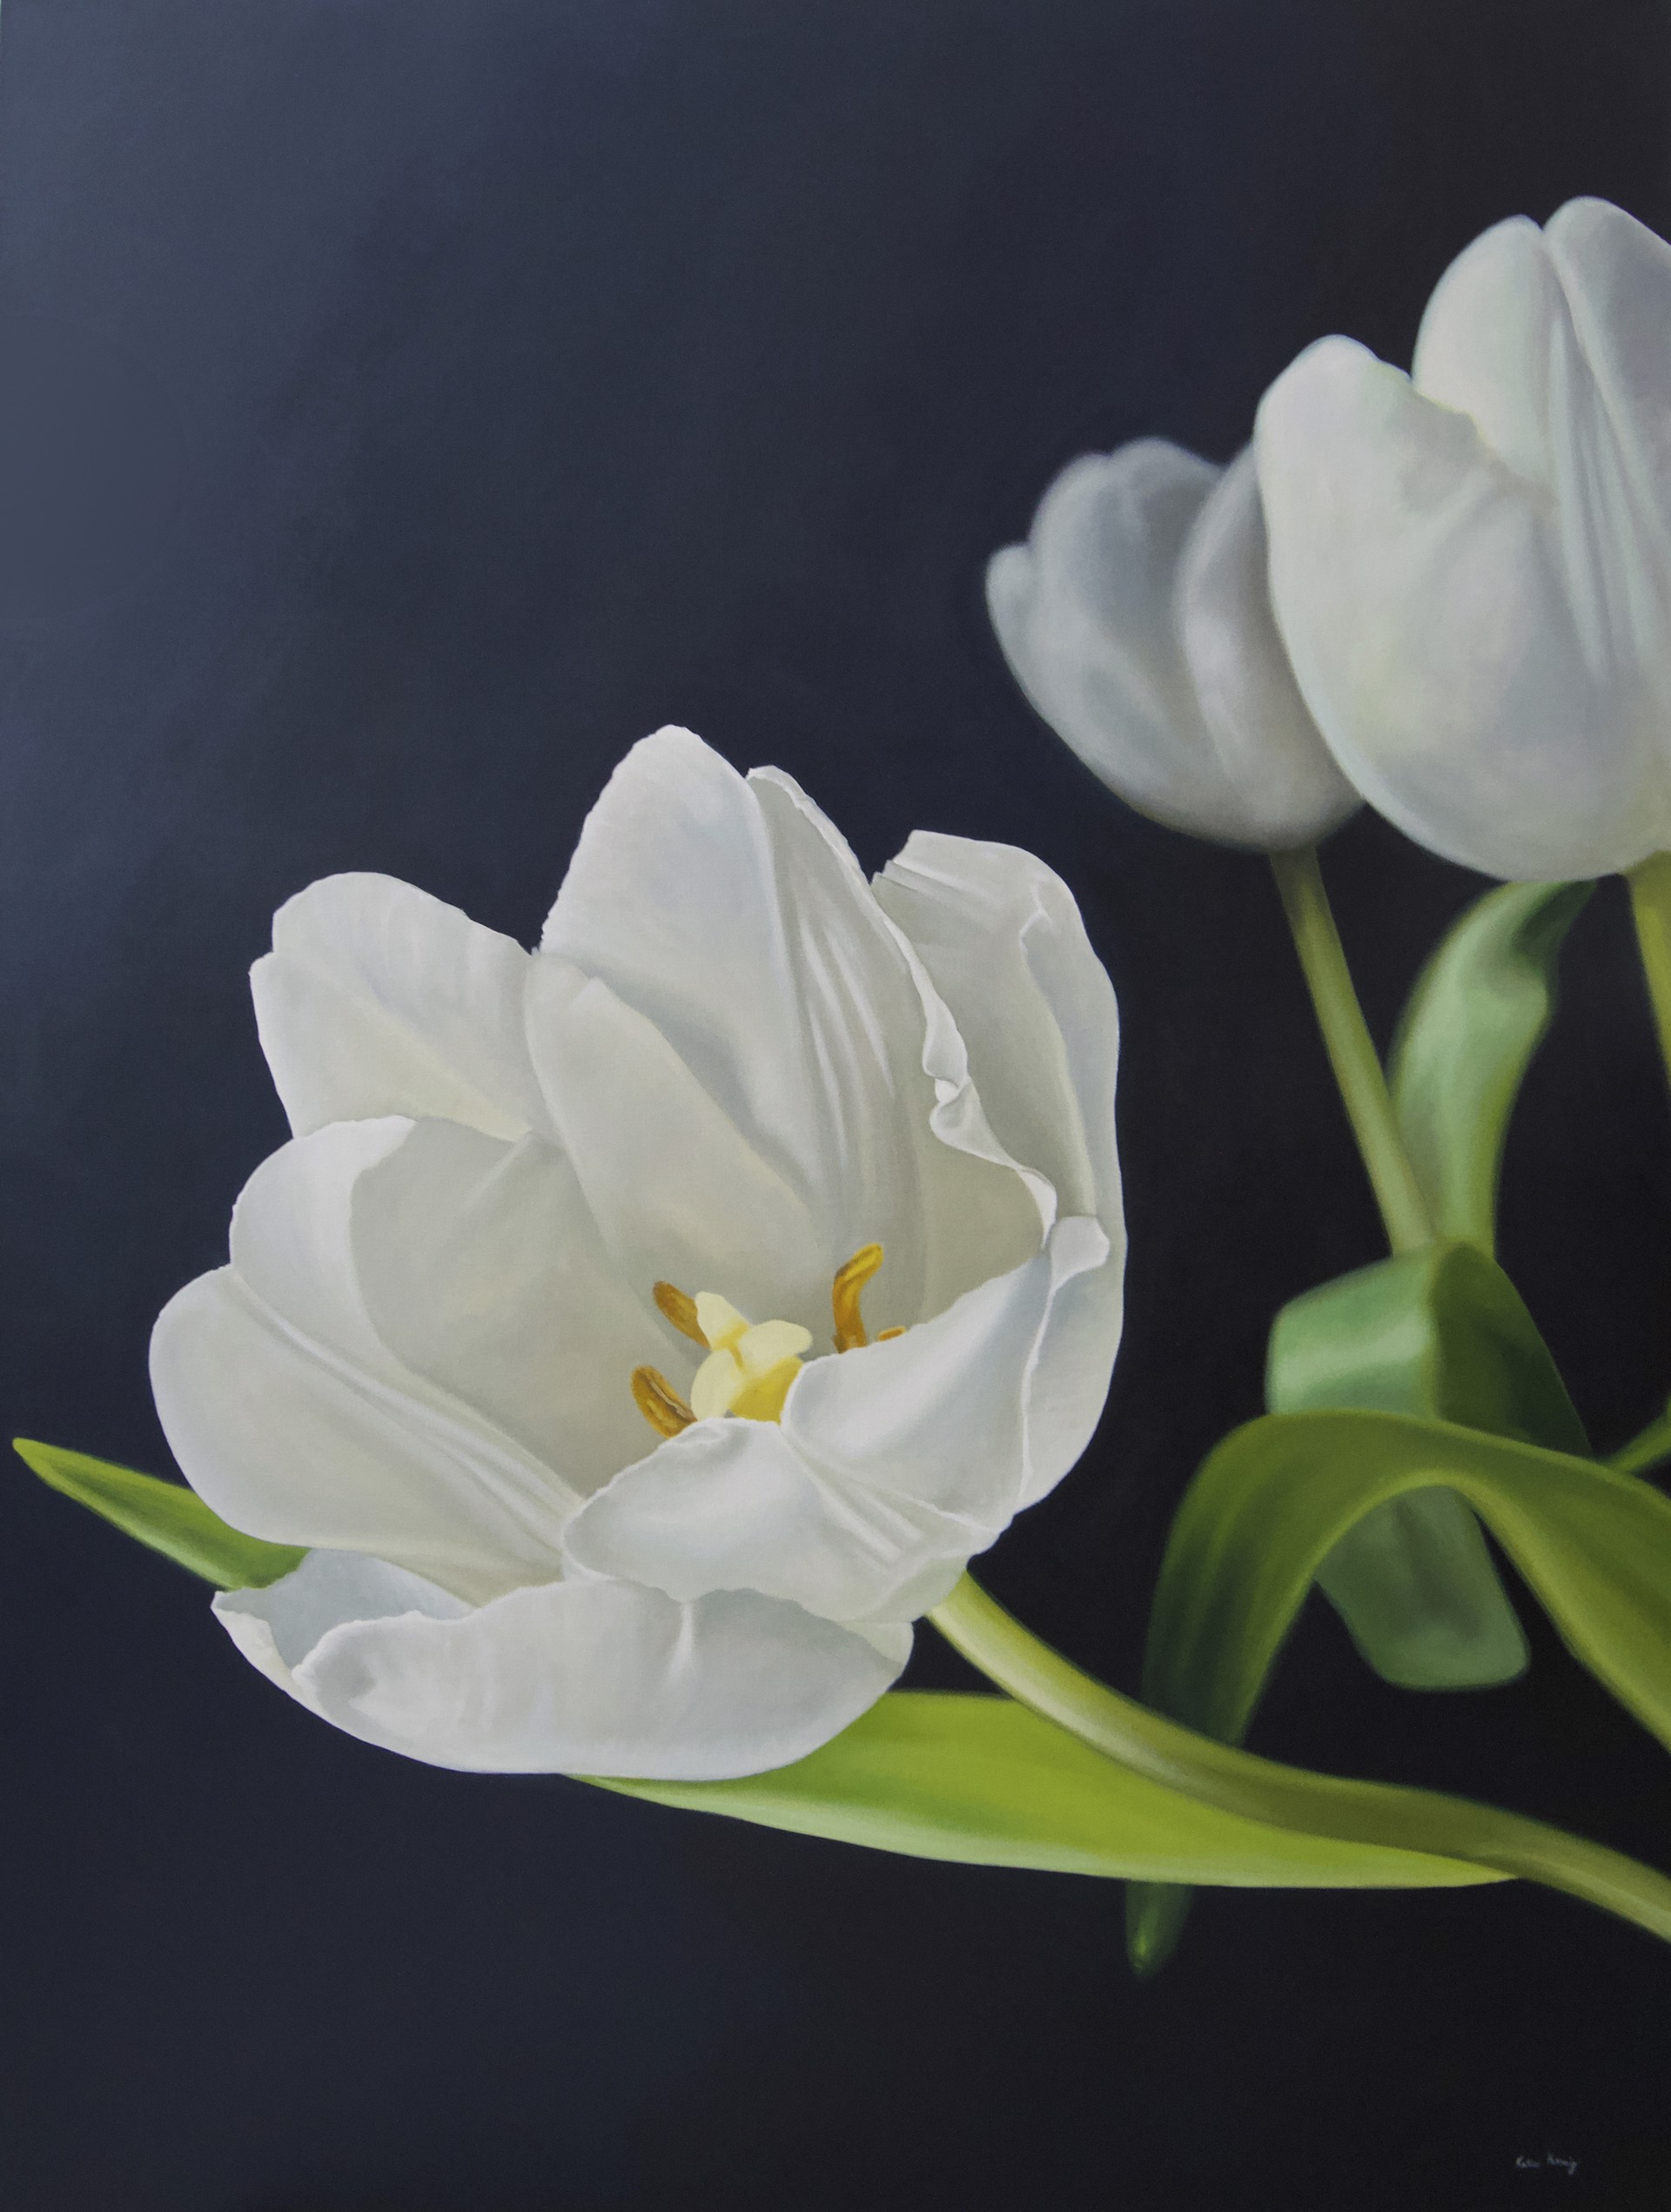 Tulip's Greeting by Katie Koenig